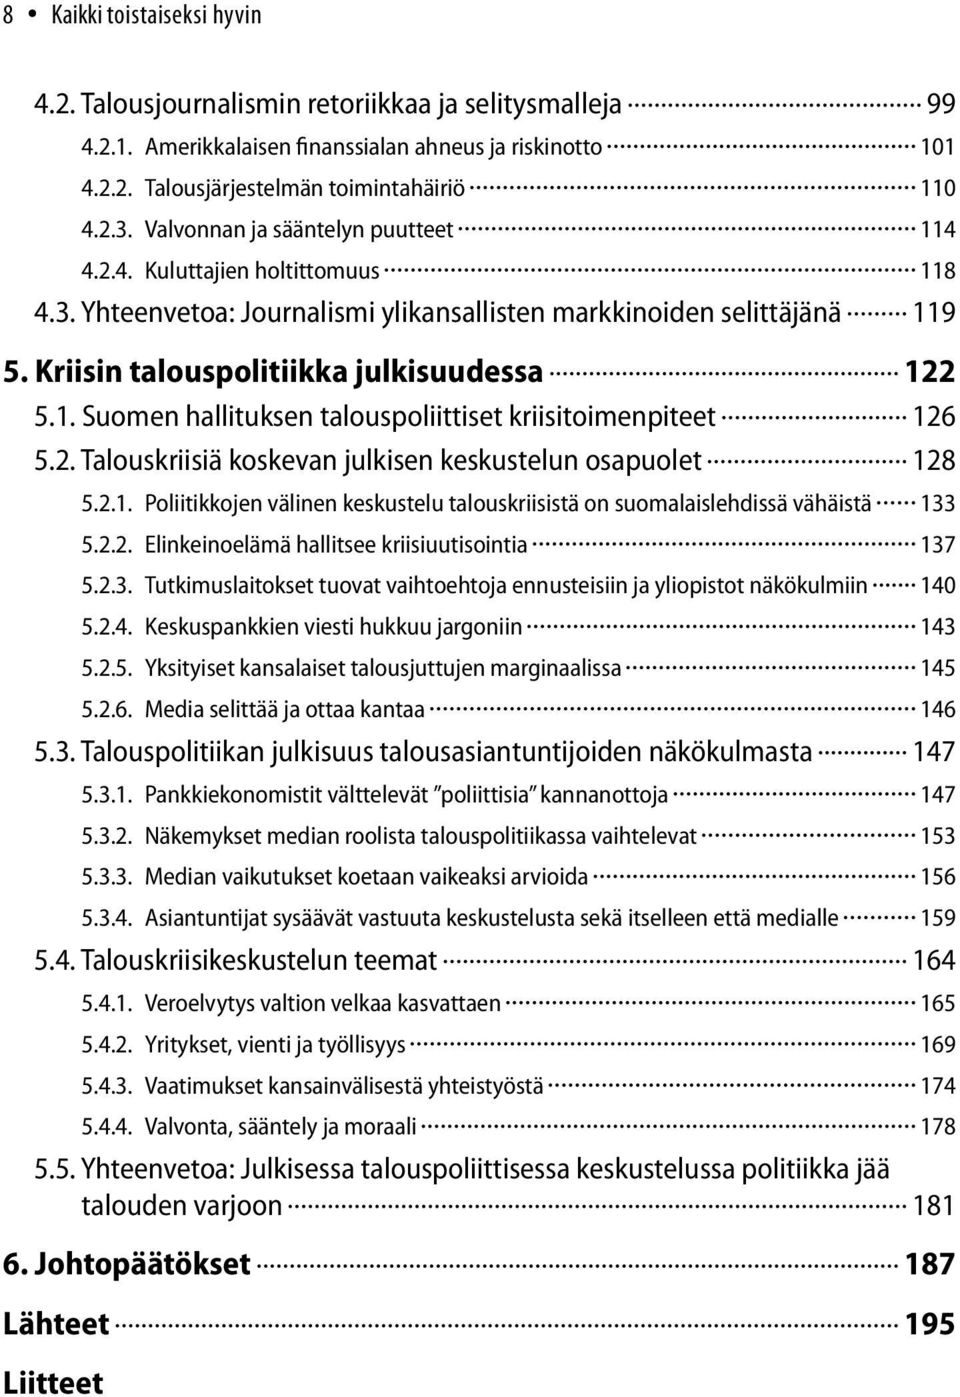 2. Talouskriisiä koskevan julkisen keskustelun osapuolet 128 5.2.1. Poliitikkojen välinen keskustelu talouskriisistä on suomalaislehdissä vähäistä 133 5.2.2. Elinkeinoelämä hallitsee kriisiuutisointia 137 5.